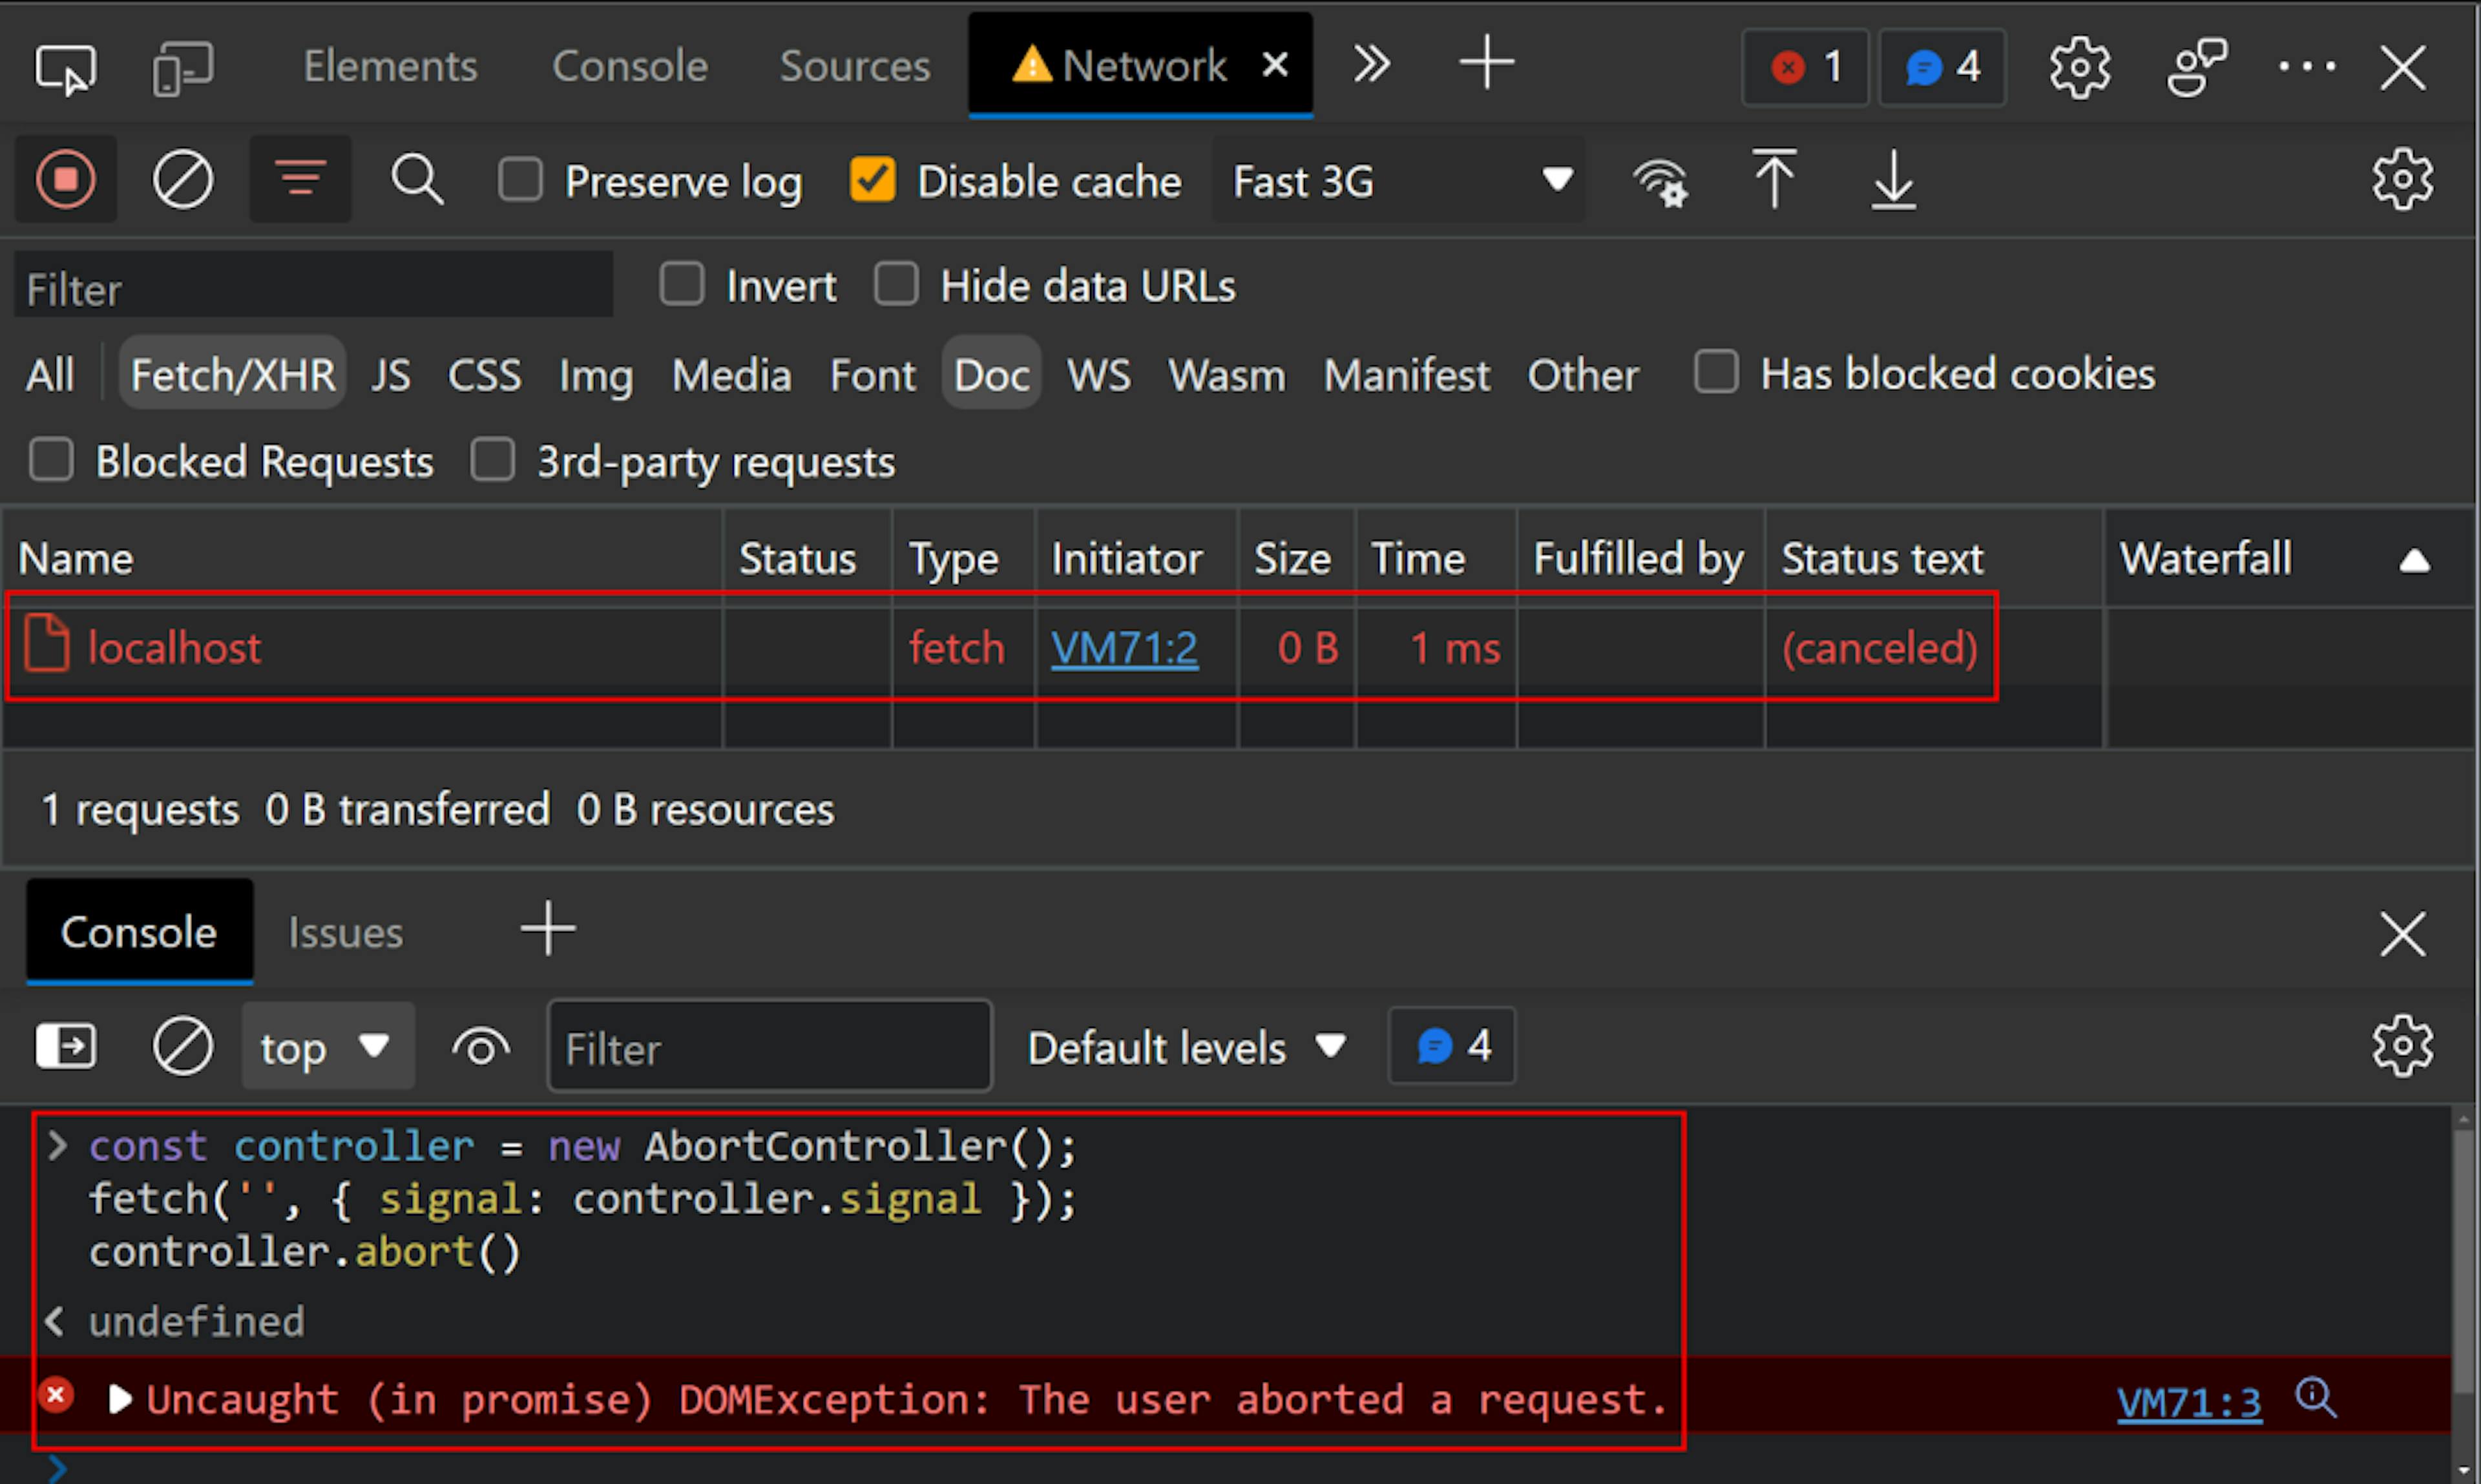 Les outils de développement Chrome se sont ouverts sur le réseau avec la console JavaScript ouverte. Dans la console se trouve le code "const controller = new AbortController();fetch('', { signal: controller.signal });controller.abort()", suivi de l'exception, "Uncaught (in promise) DOMException : The l'utilisateur a abandonné une demande." Dans le réseau, il y a une demande à "localhost" avec le texte d'état "(annulé)"